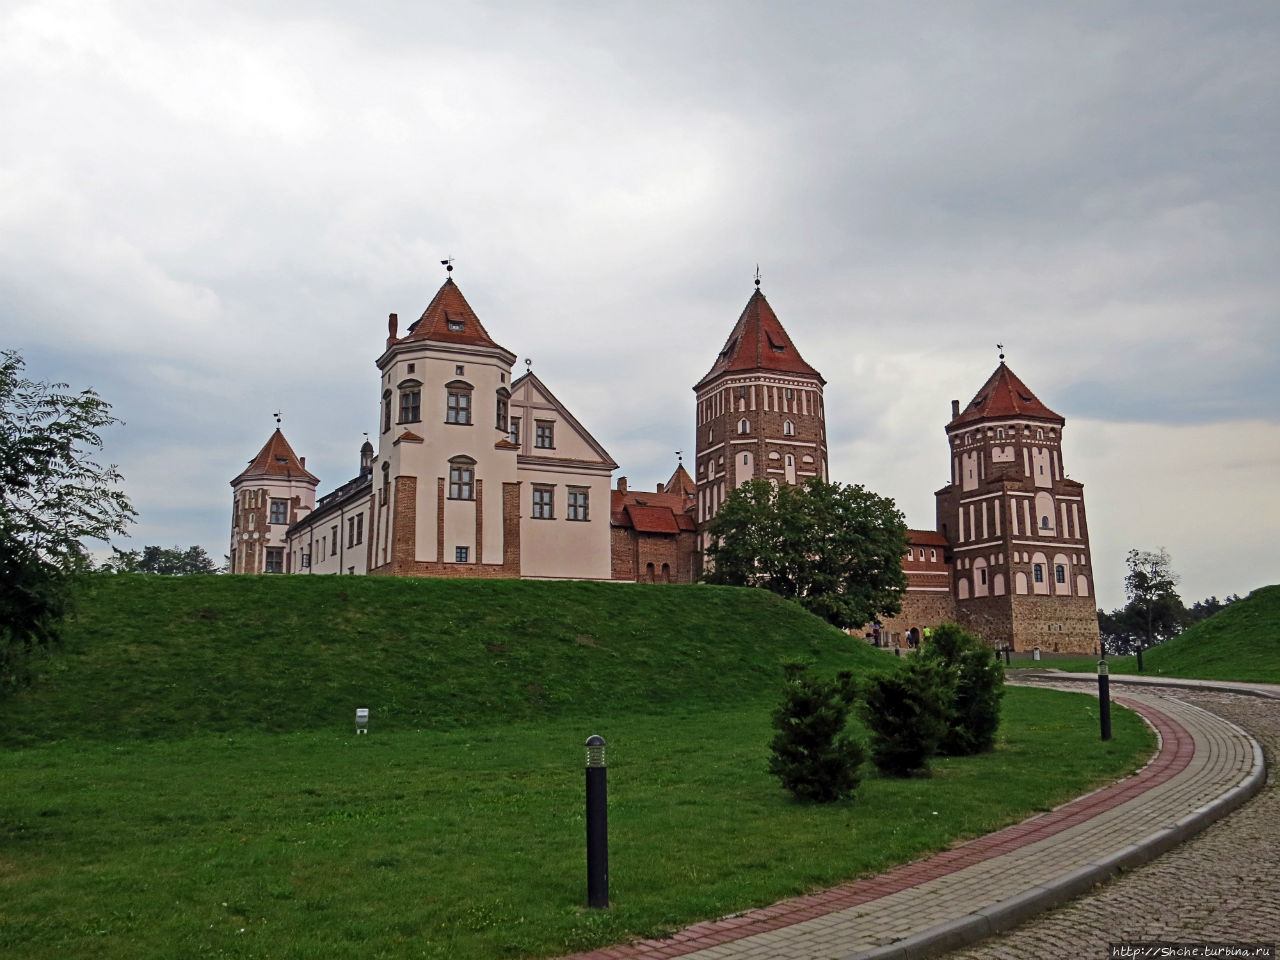 Мирский замковый комплекс  — памятник ЮНЕСКО № 625 Мир, Беларусь